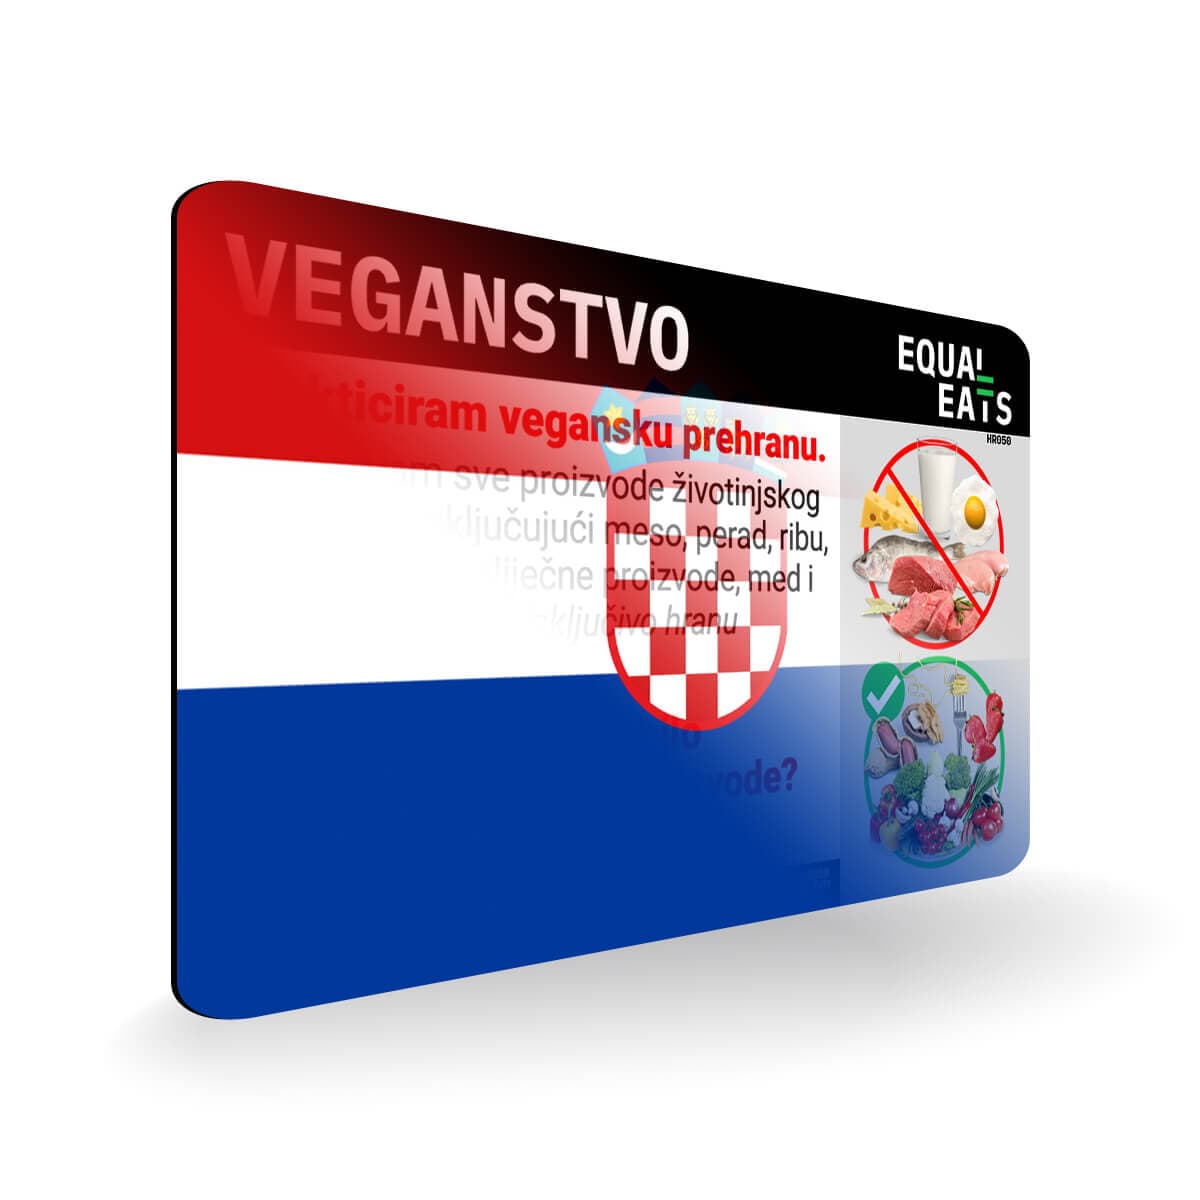 Vegan Diet in Croatian. Vegan Card for Croatia